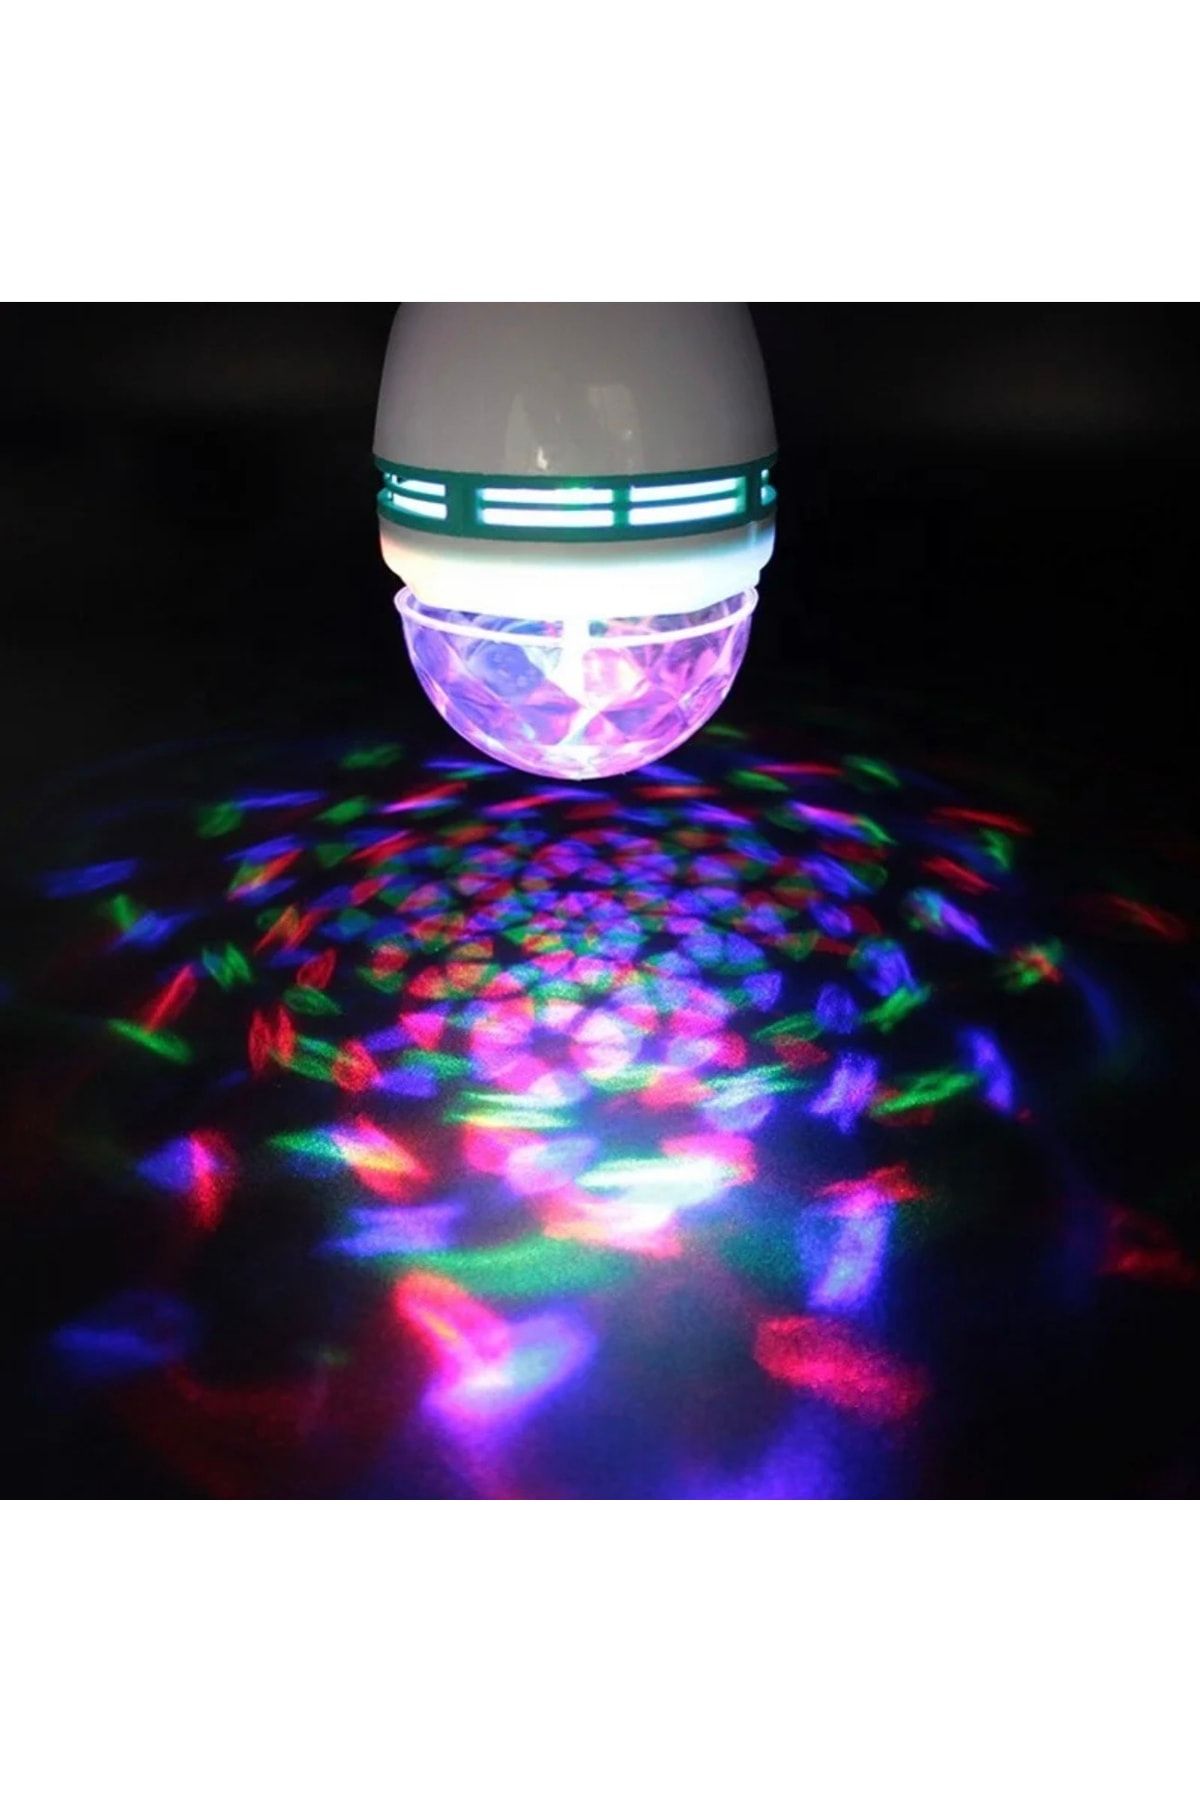 Bvs Elektronik Renkli Led Döner Başlıklı Disko Topu Ampül Gece Lambası 3 Watt Fiş Aparatlı Renkli Disco Ampül